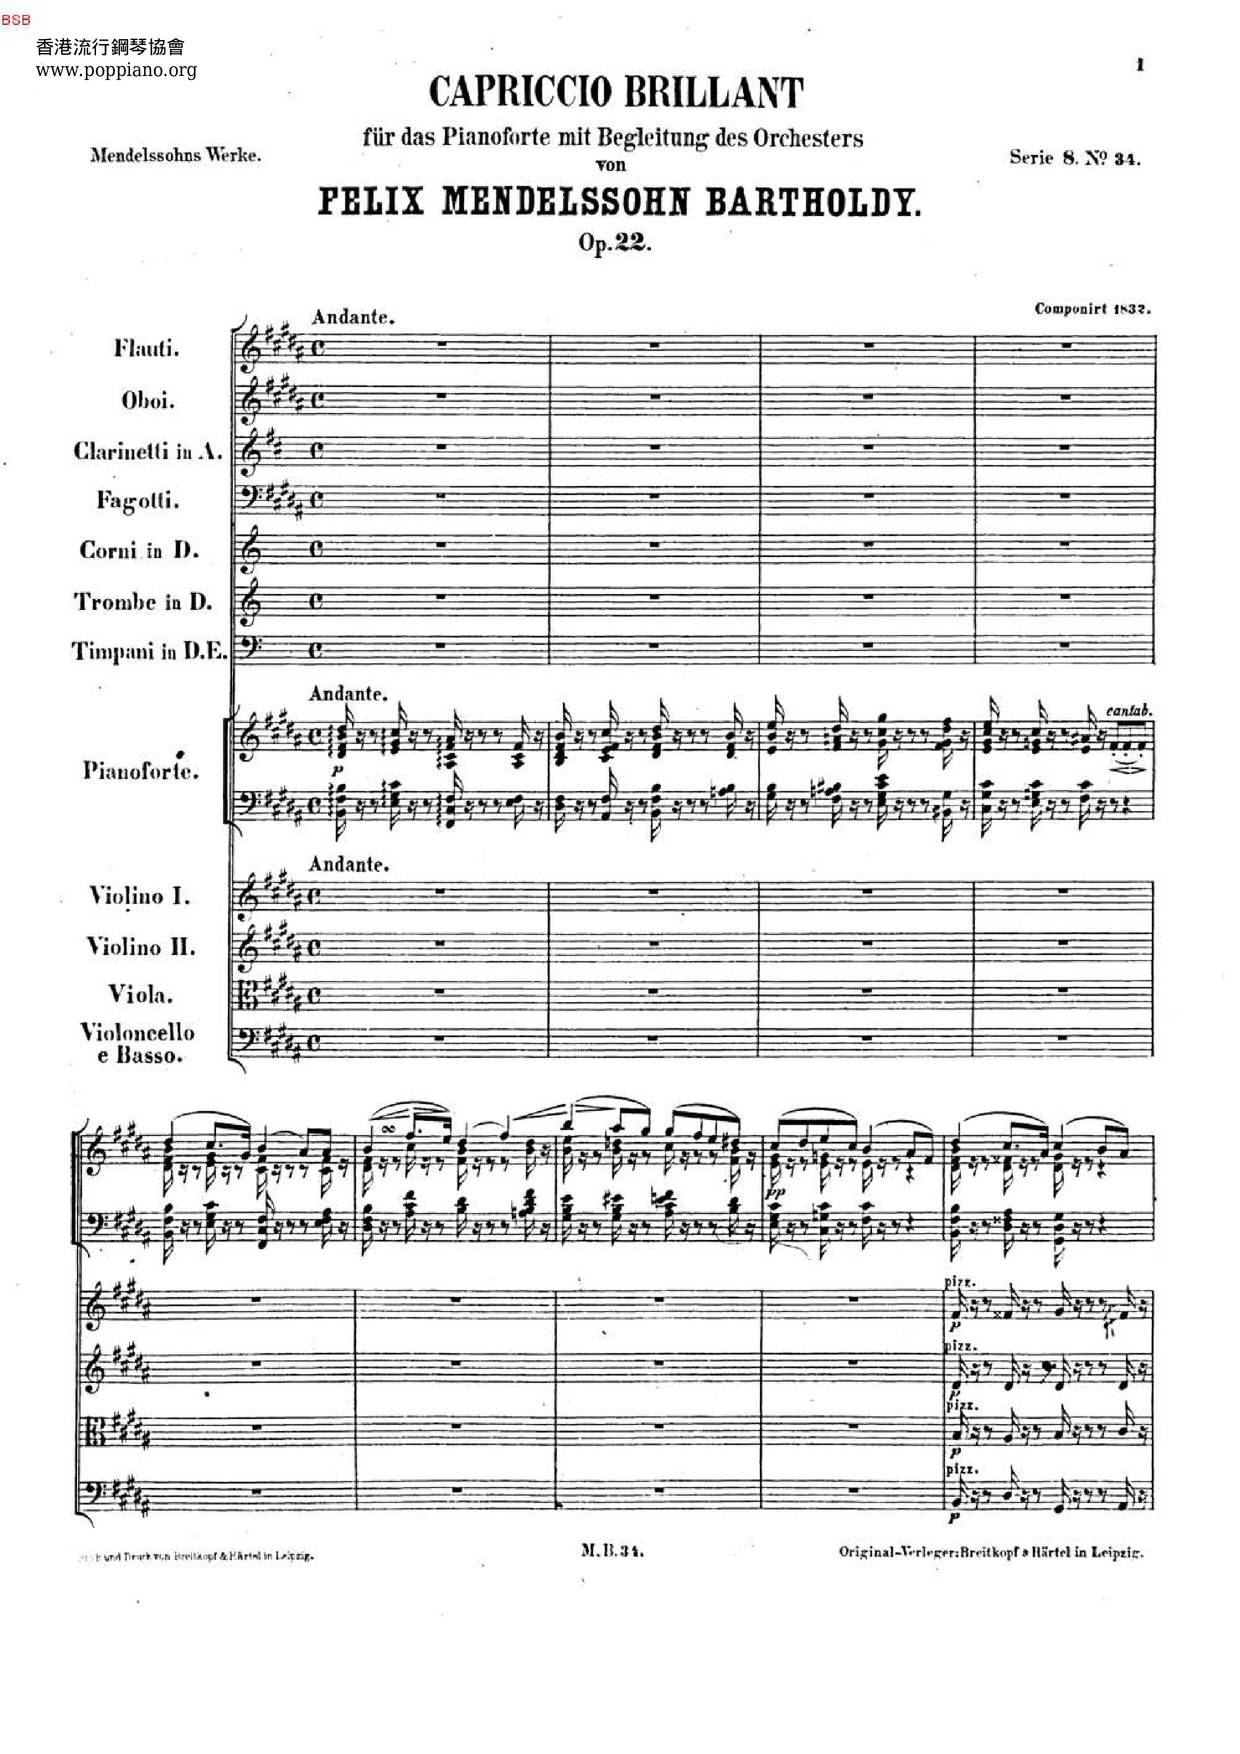 Capriccio brillant, Op. 22: Andante Score